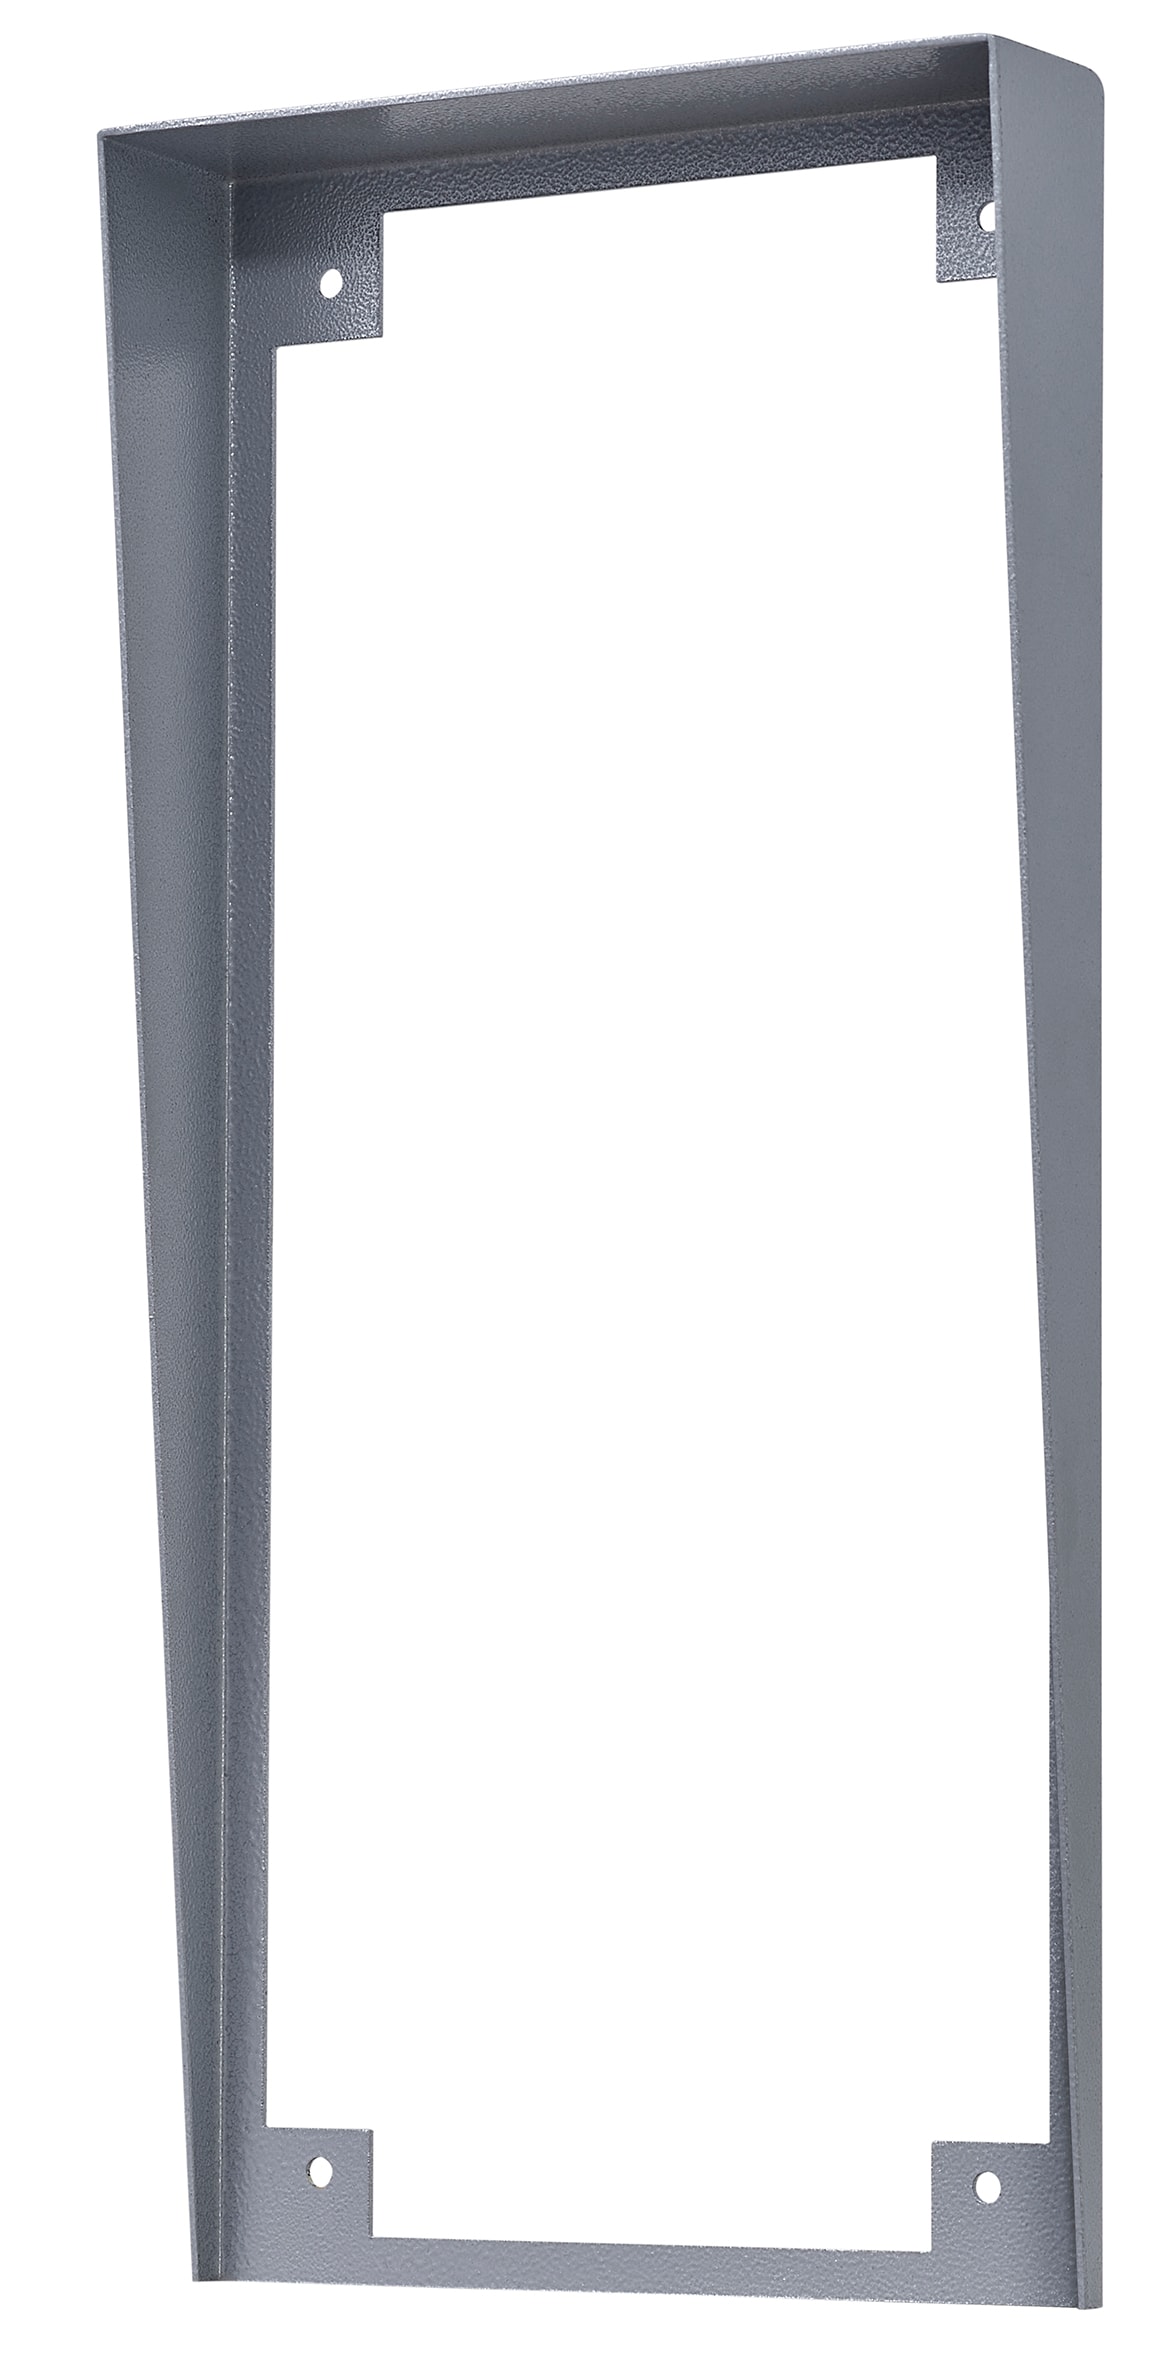 Aiphone - Visiere en acier peint pour tl2000 encastree